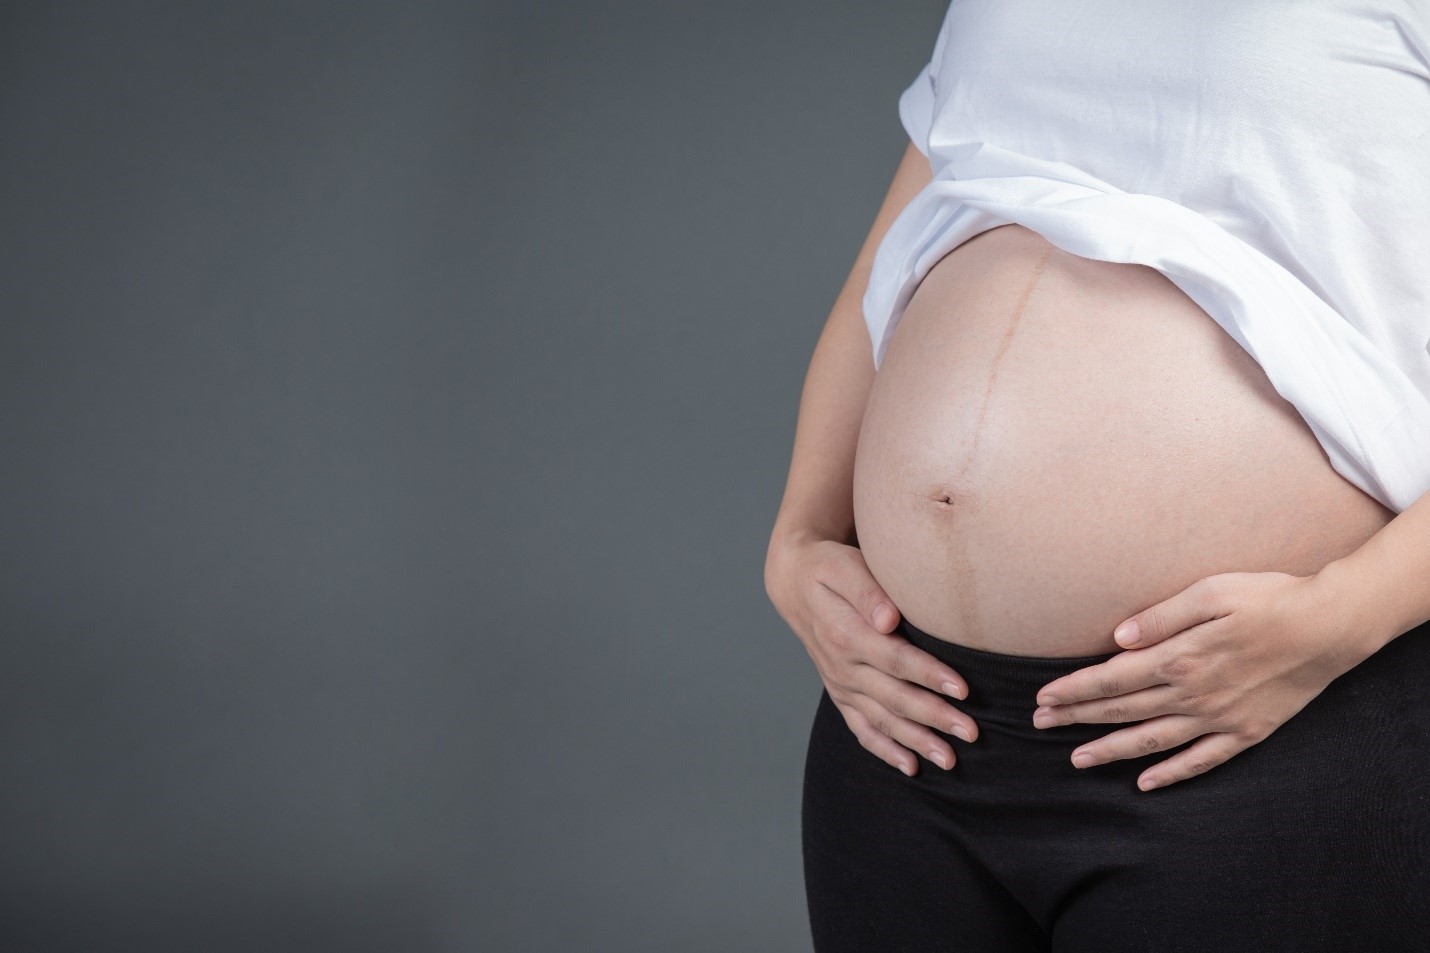 סימני מתיחה בהיריון – כל מה שצריך לדעת